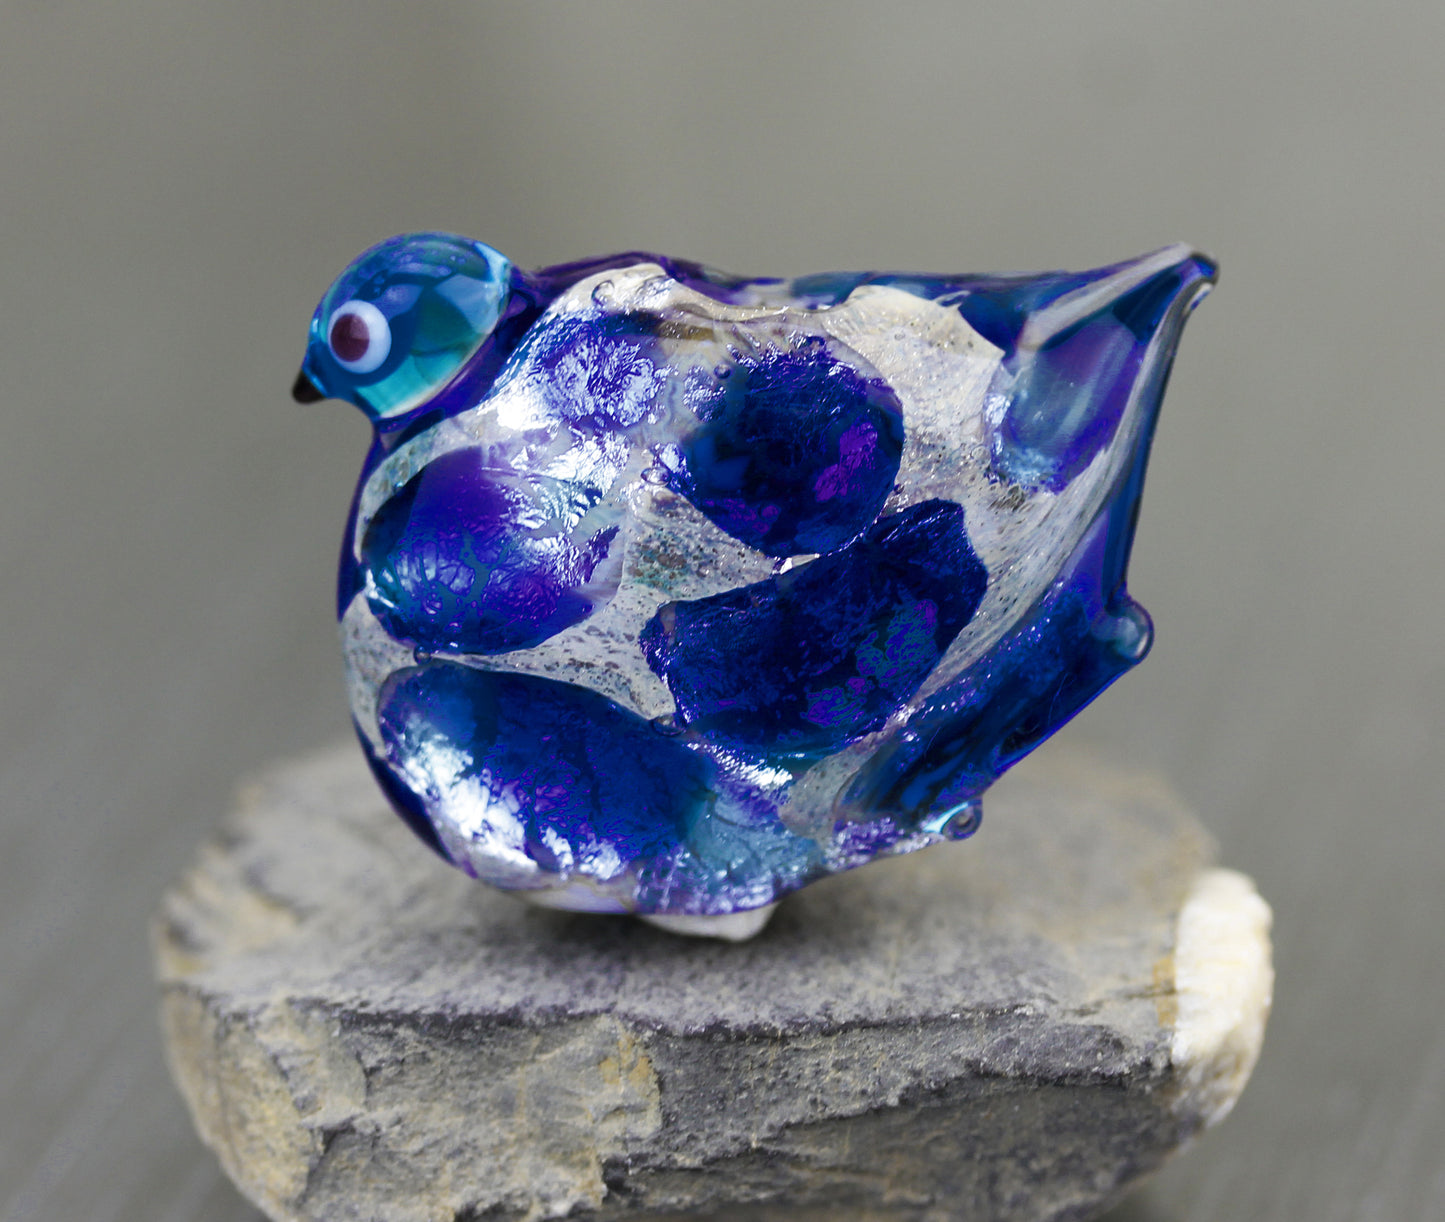 Cobalt blue Sea Rocks bird focal bead 